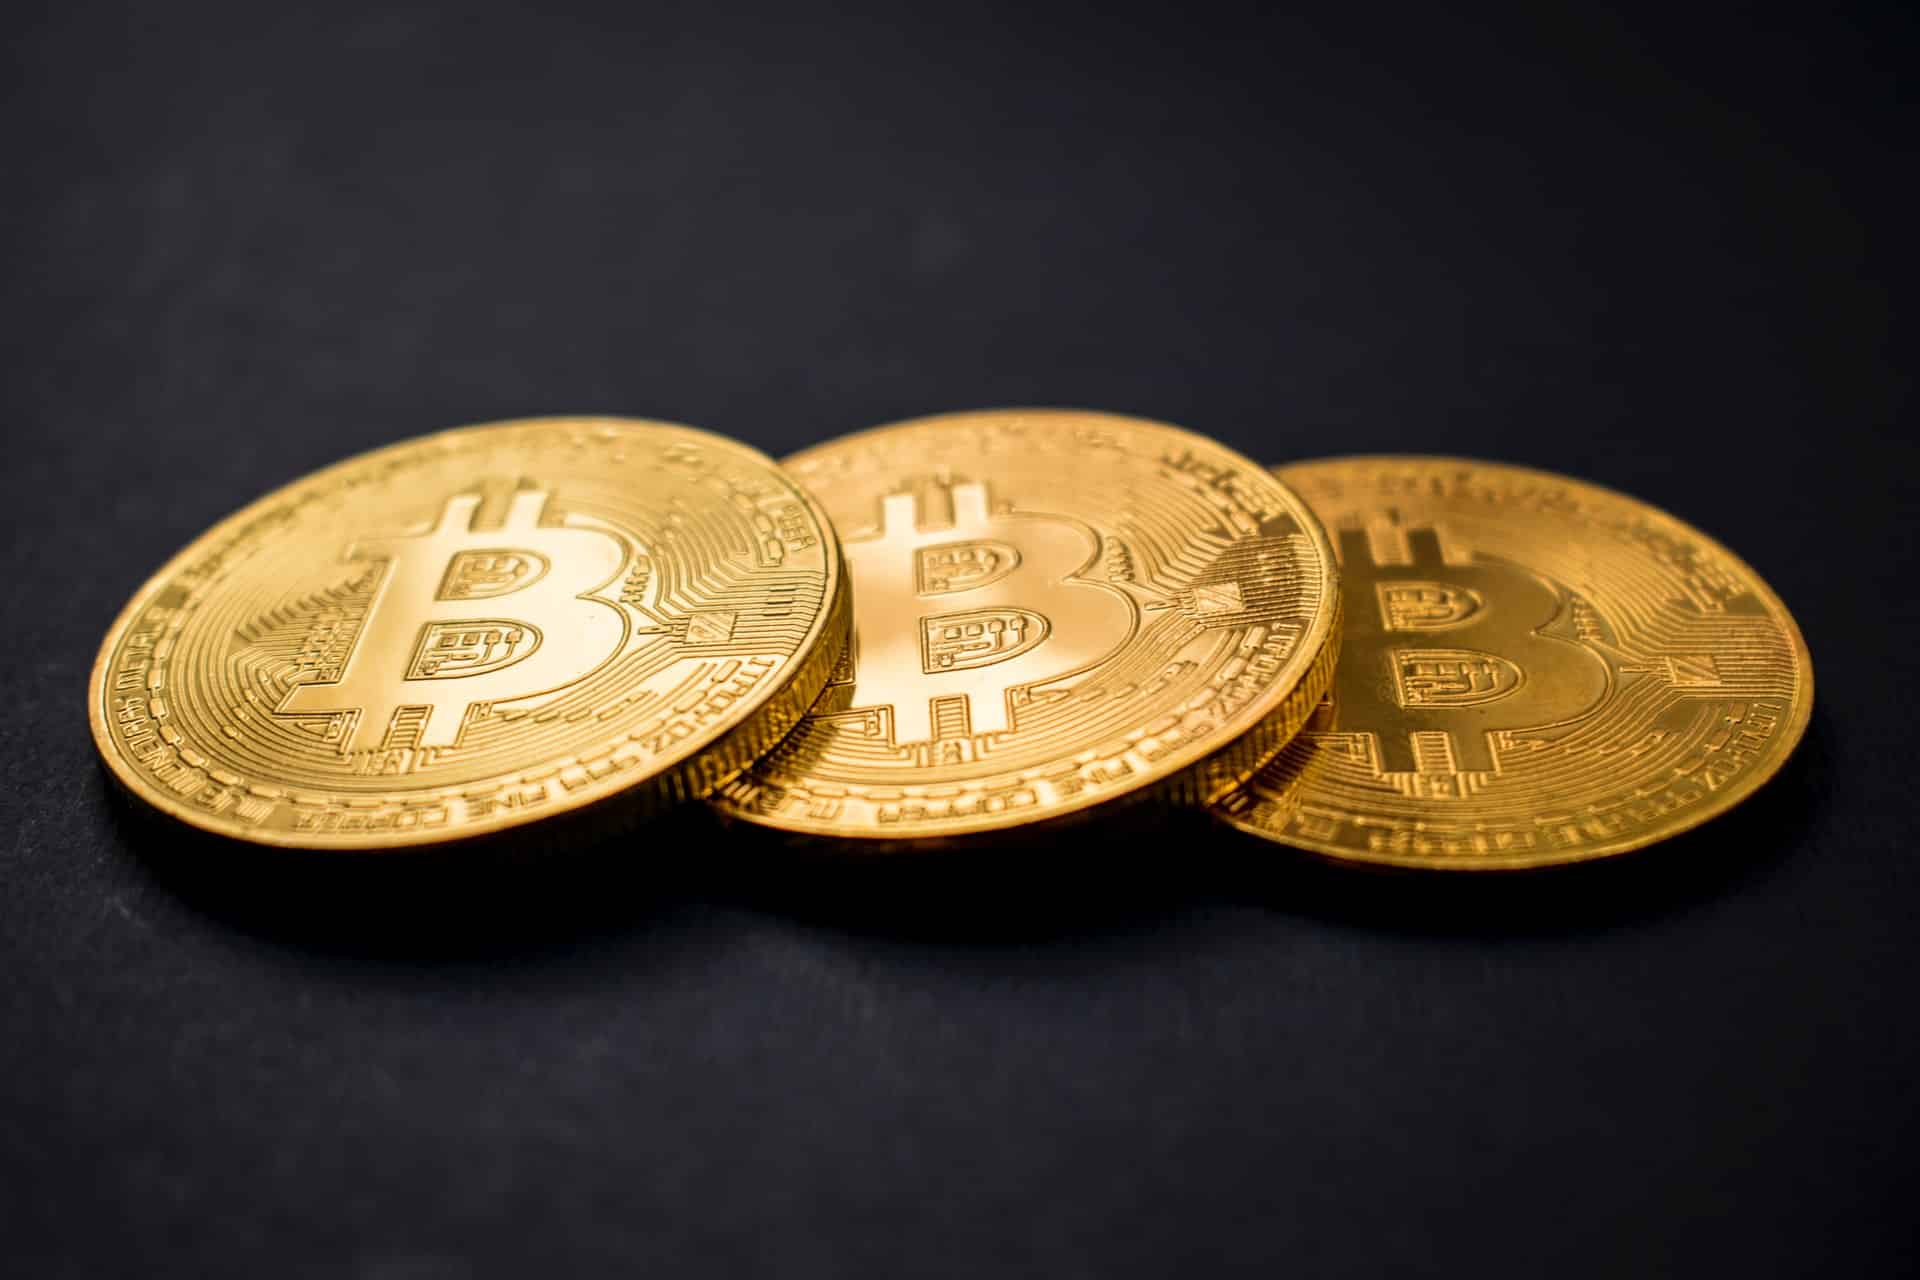 Giá Bitcoin có thể đạt $110K sau khi Halving tiếp theo